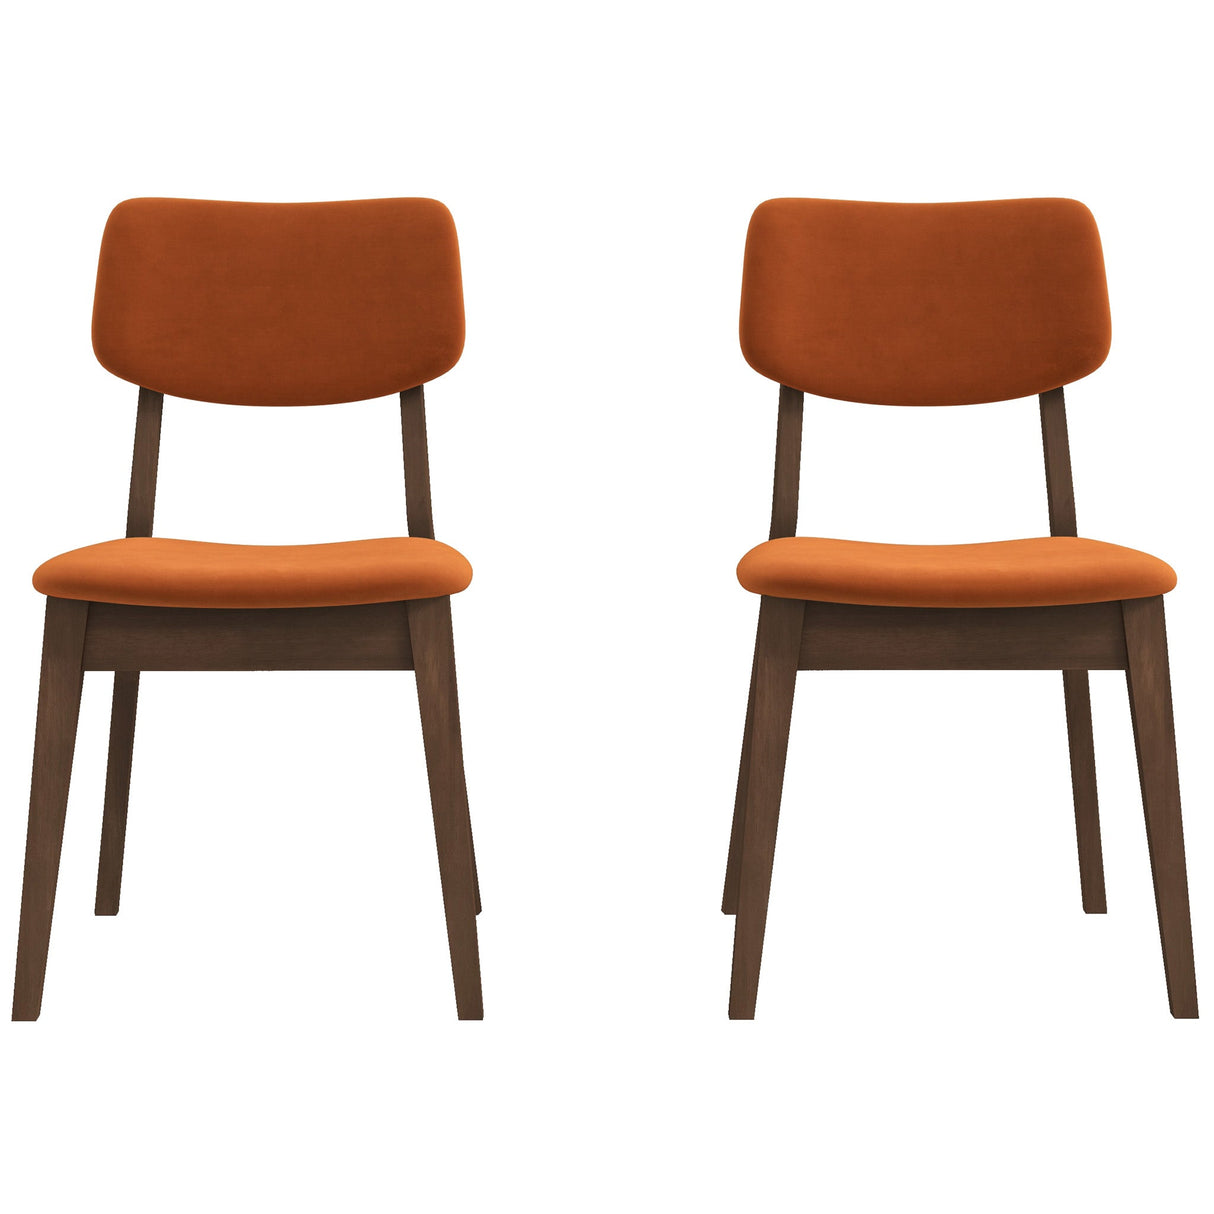 Mid-Century Modern Velvet Solid Back Side Chair (Set of 2) Teal Blue Velvet - AFC01831 - Luna Furniture